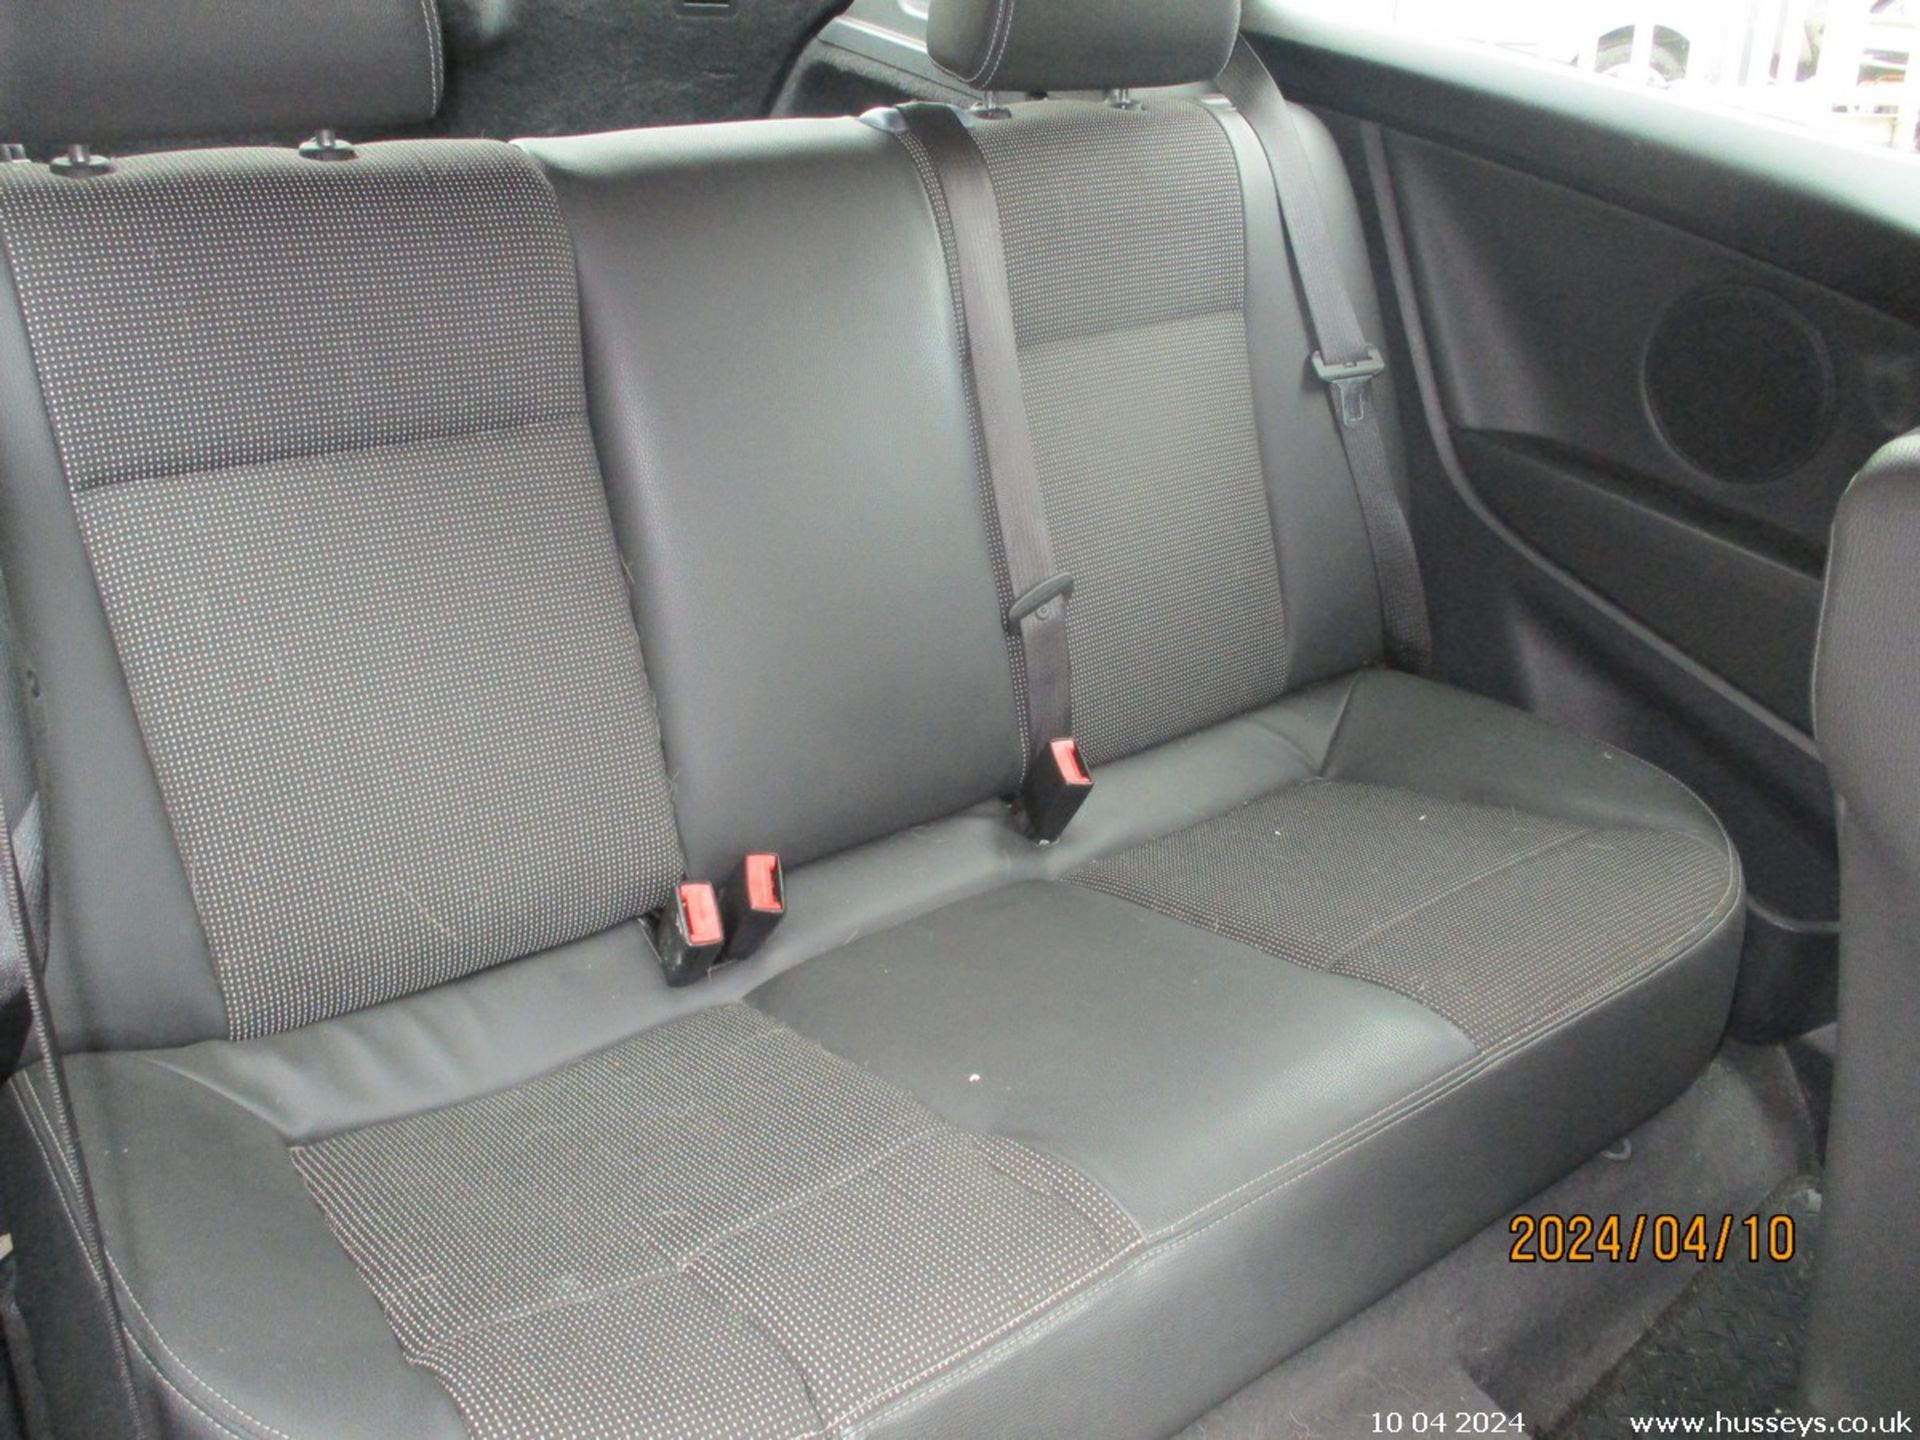 09/09 VAUXHALL ASTRA DESIGN - 1796cc 3dr Hatchback (Grey, 144k) - Image 15 of 20